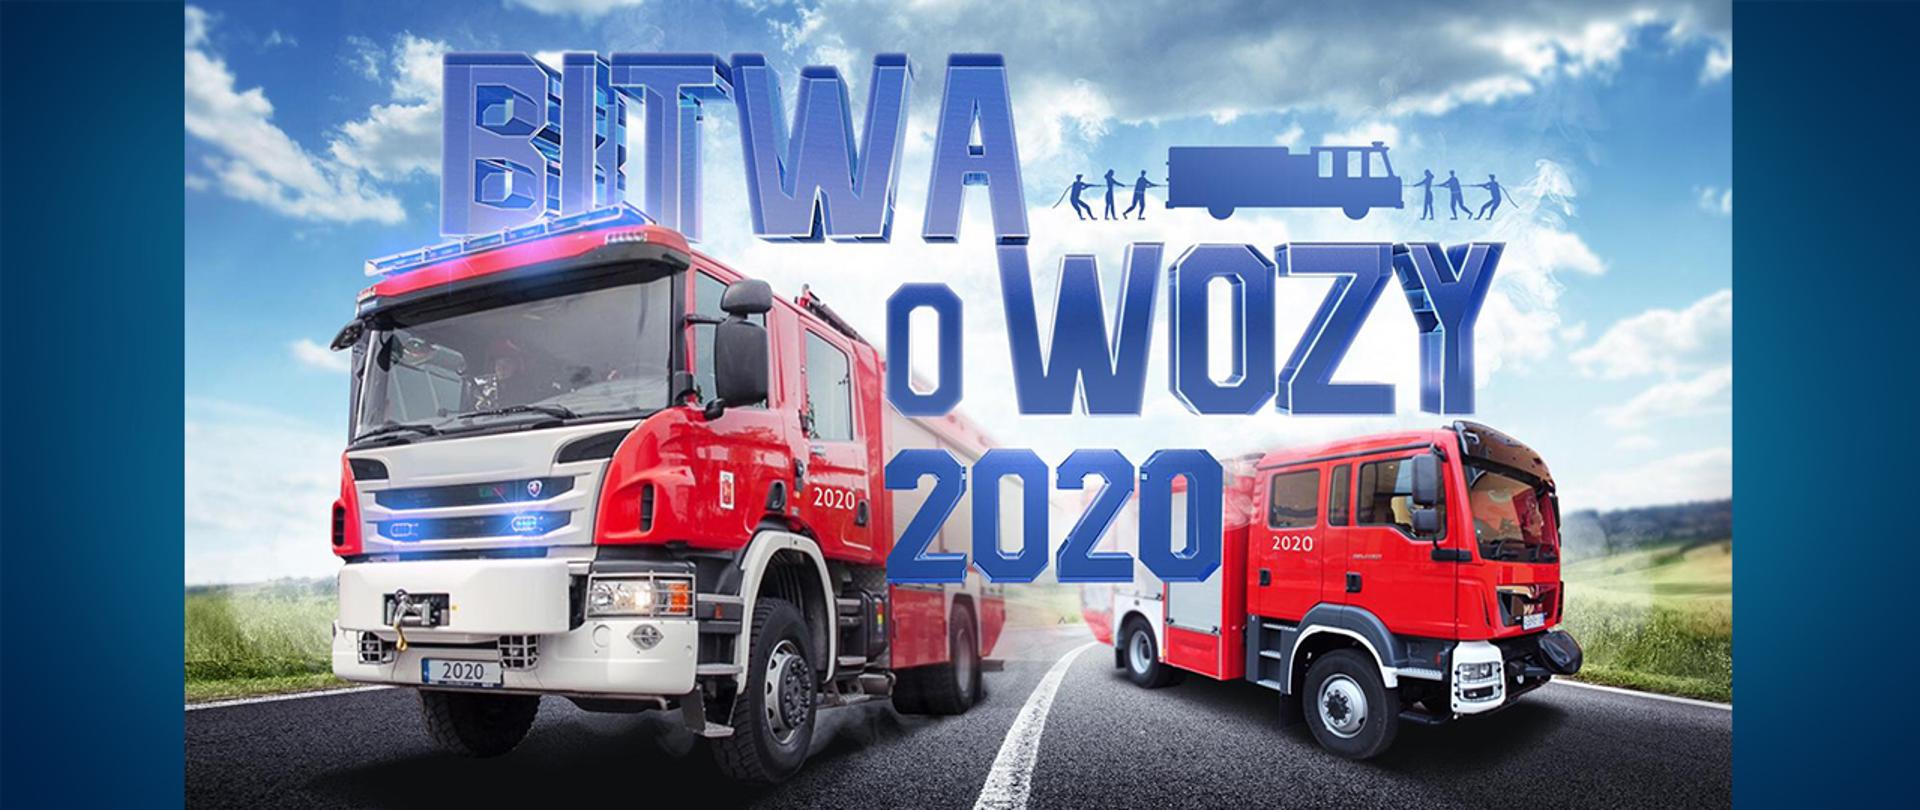 Grafika promująca akcję profrekwencyjną MSWiA, na której widnieją dwa wozy ratowniczo-gaśnicze pędzące ulicą oraz napis: "Bitwa o wozy 2020".